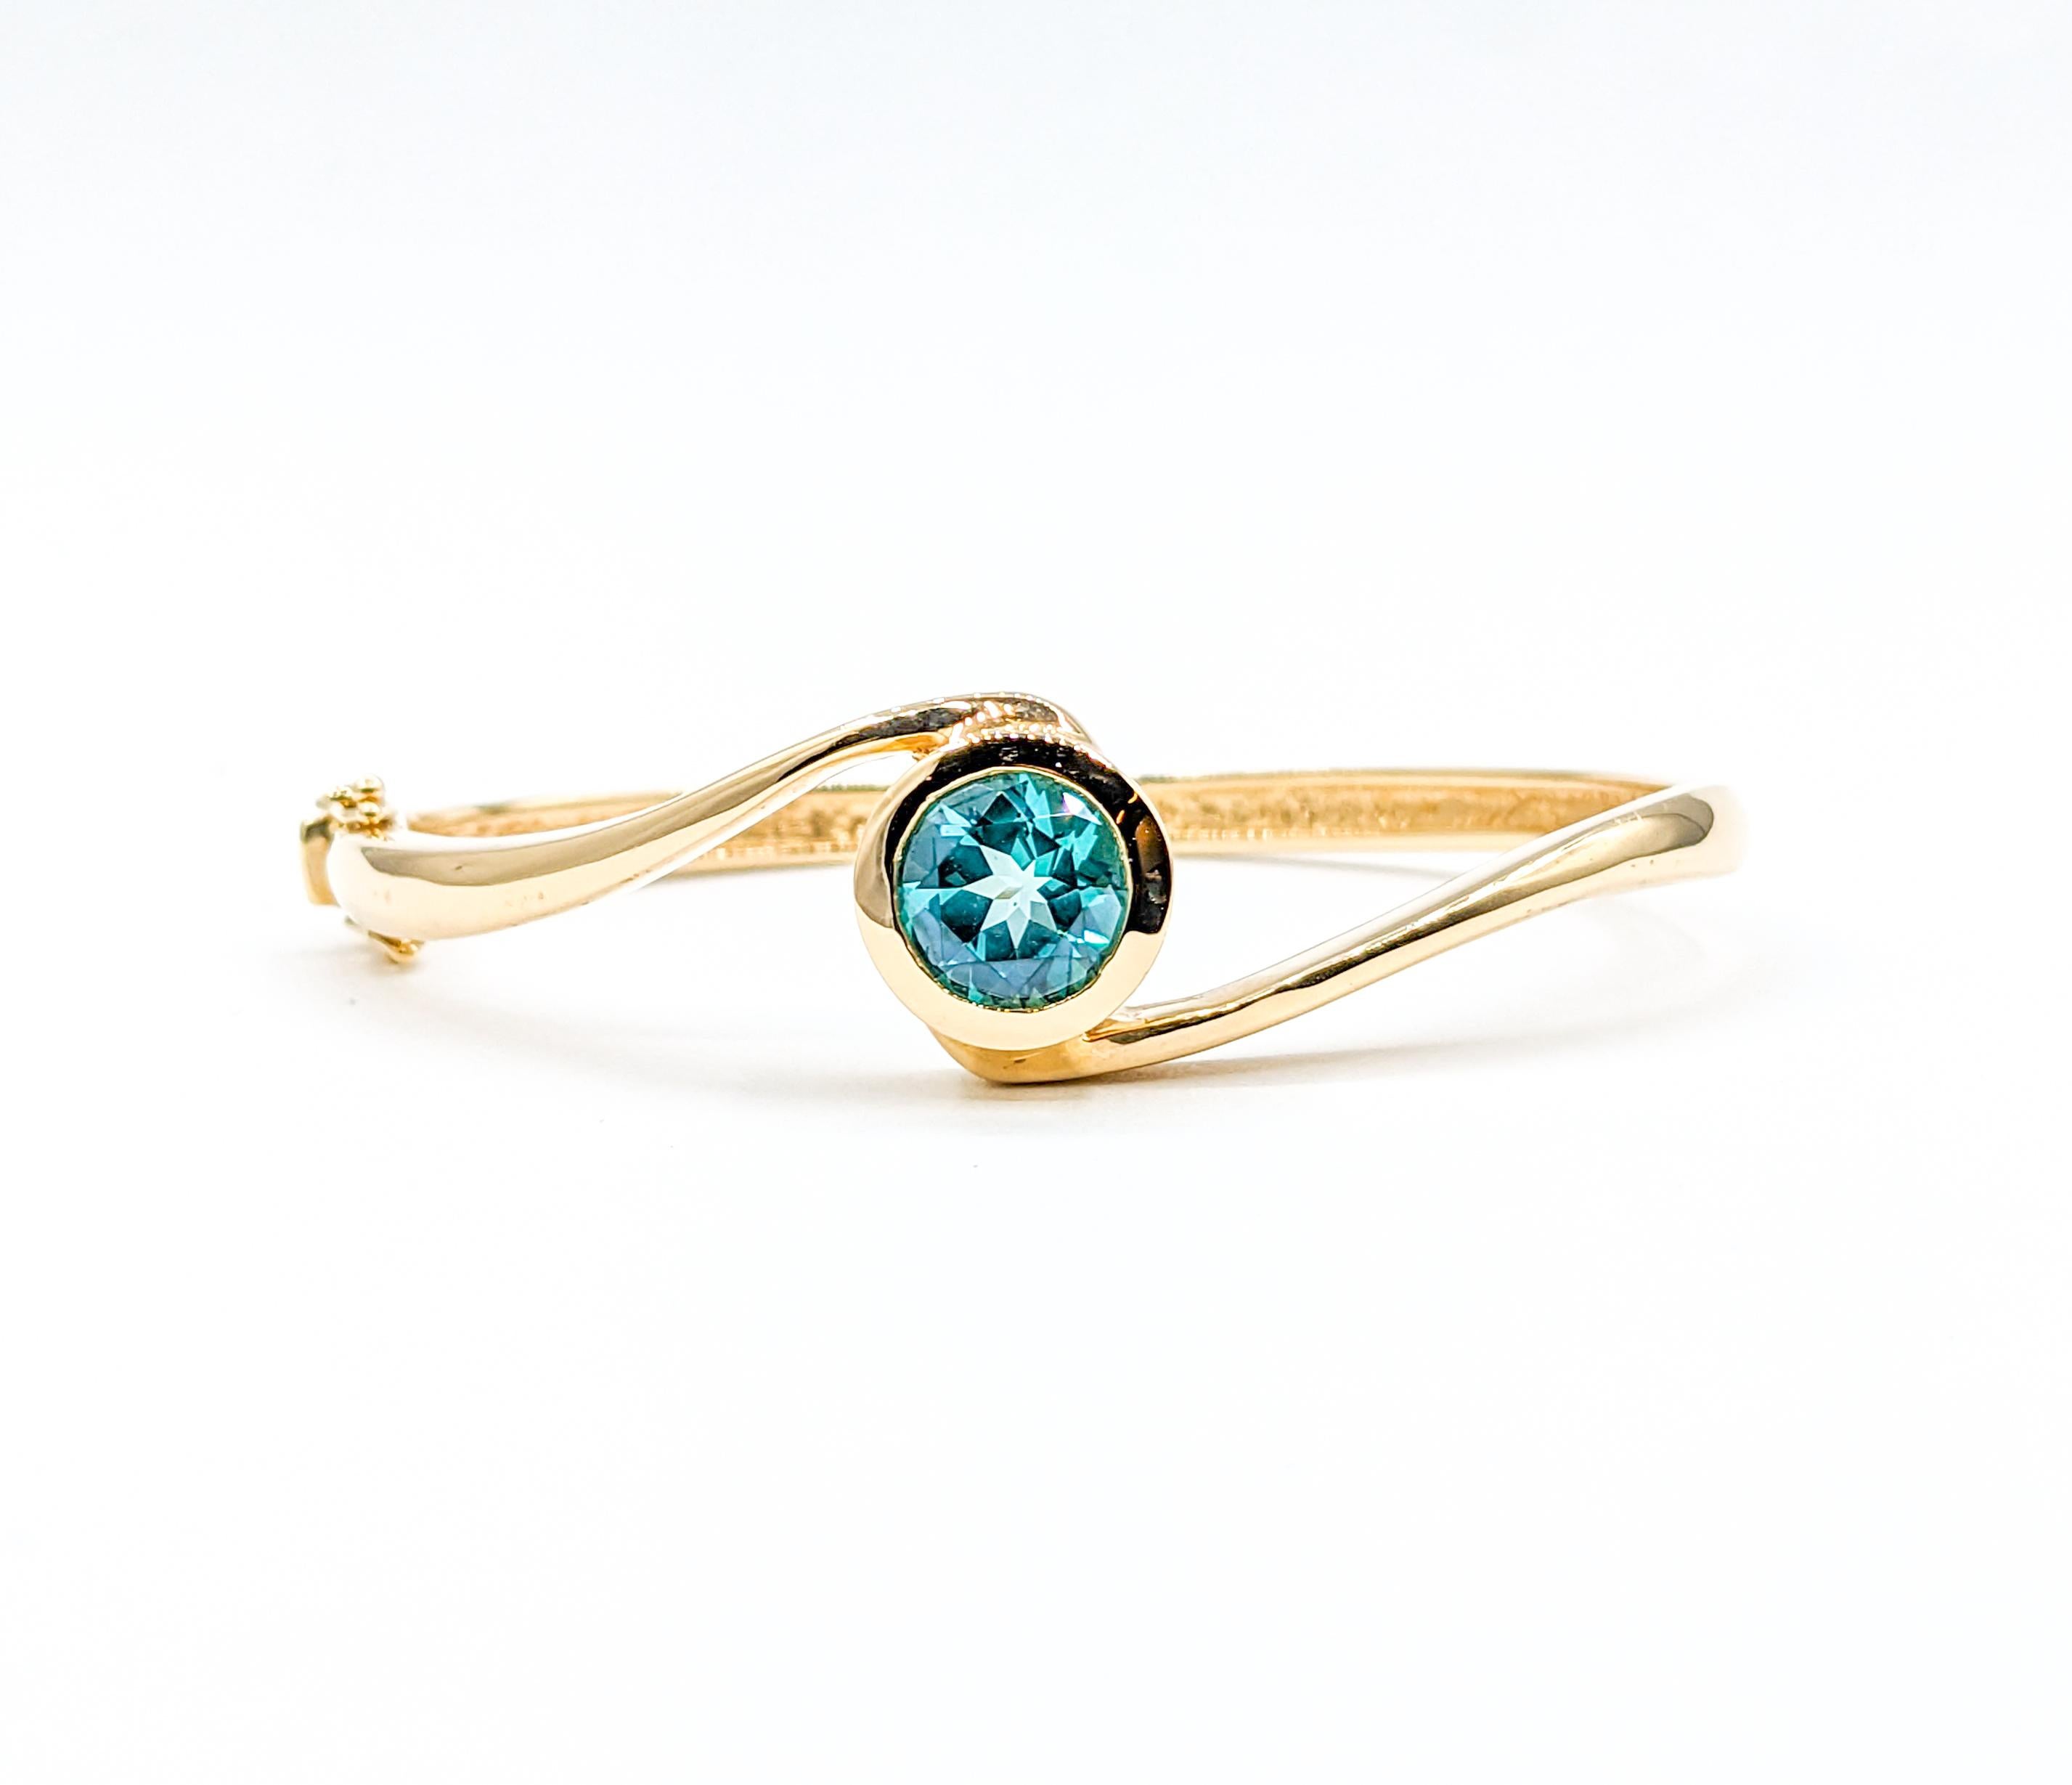 Bracelet moderne à charnière en or jaune serti de topazes bleues

Cet exquis bracelet est un magnifique bijou en or jaune 14 carats, orné d'une captivante topaze bleue ronde de 9 mm. L'éclat brillant de la topaze et sa couleur envoûtante ne